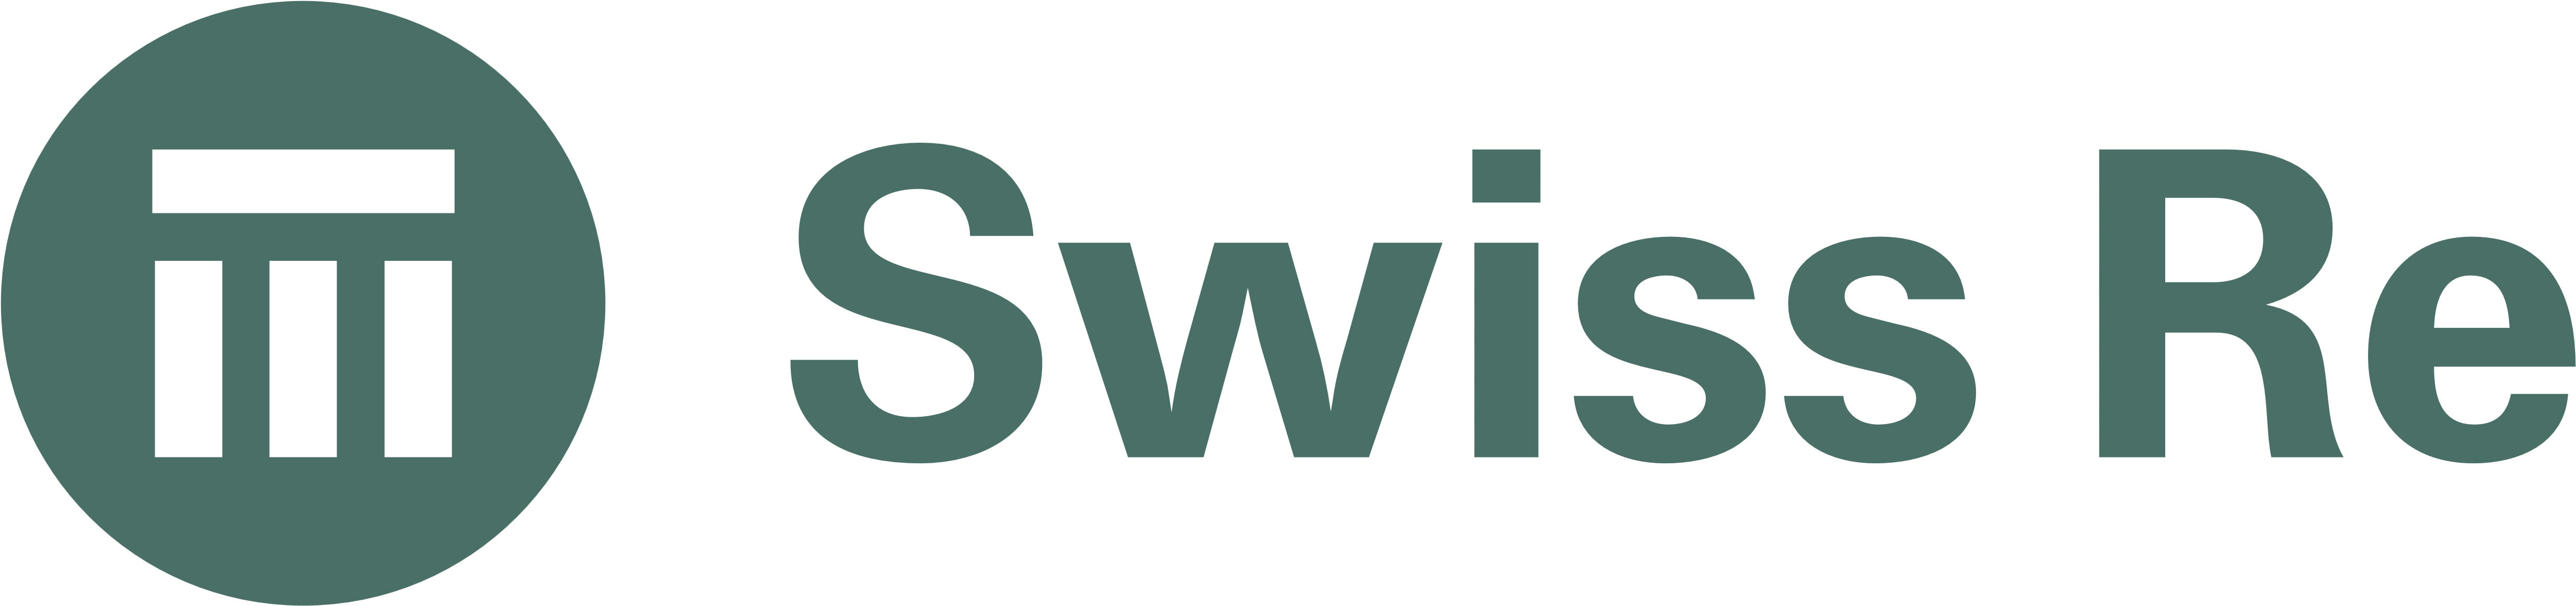 Swiss Re Logos Download - Swiss Re Logo Png (5000x1226)